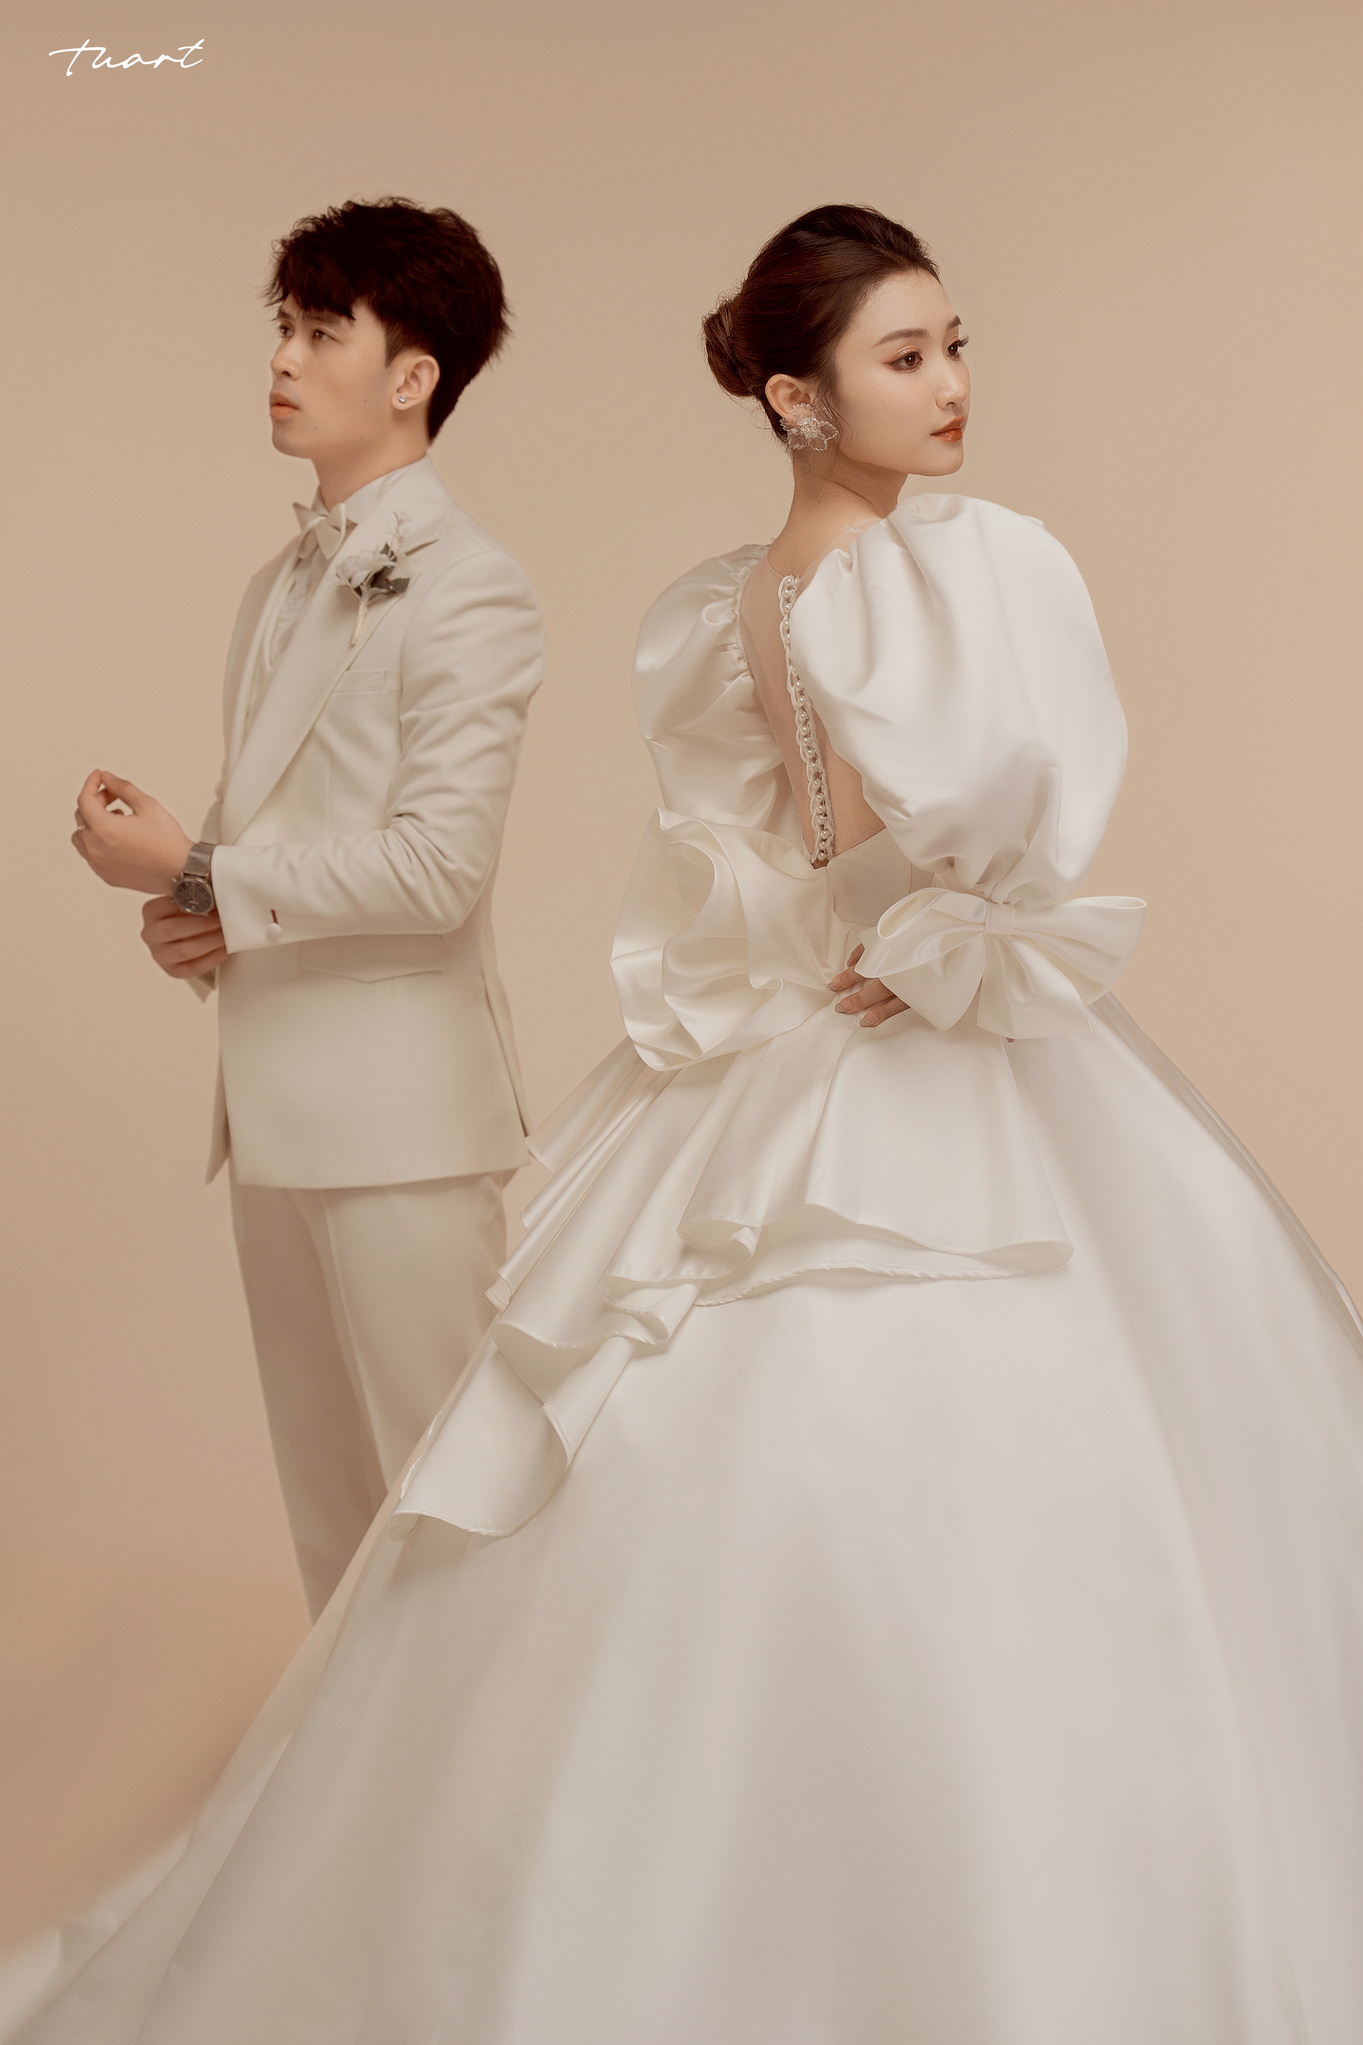 Album ảnh cưới Hàn Quốc tại phim trường độc quyền của TuArt: Việt Anh & Sam 6